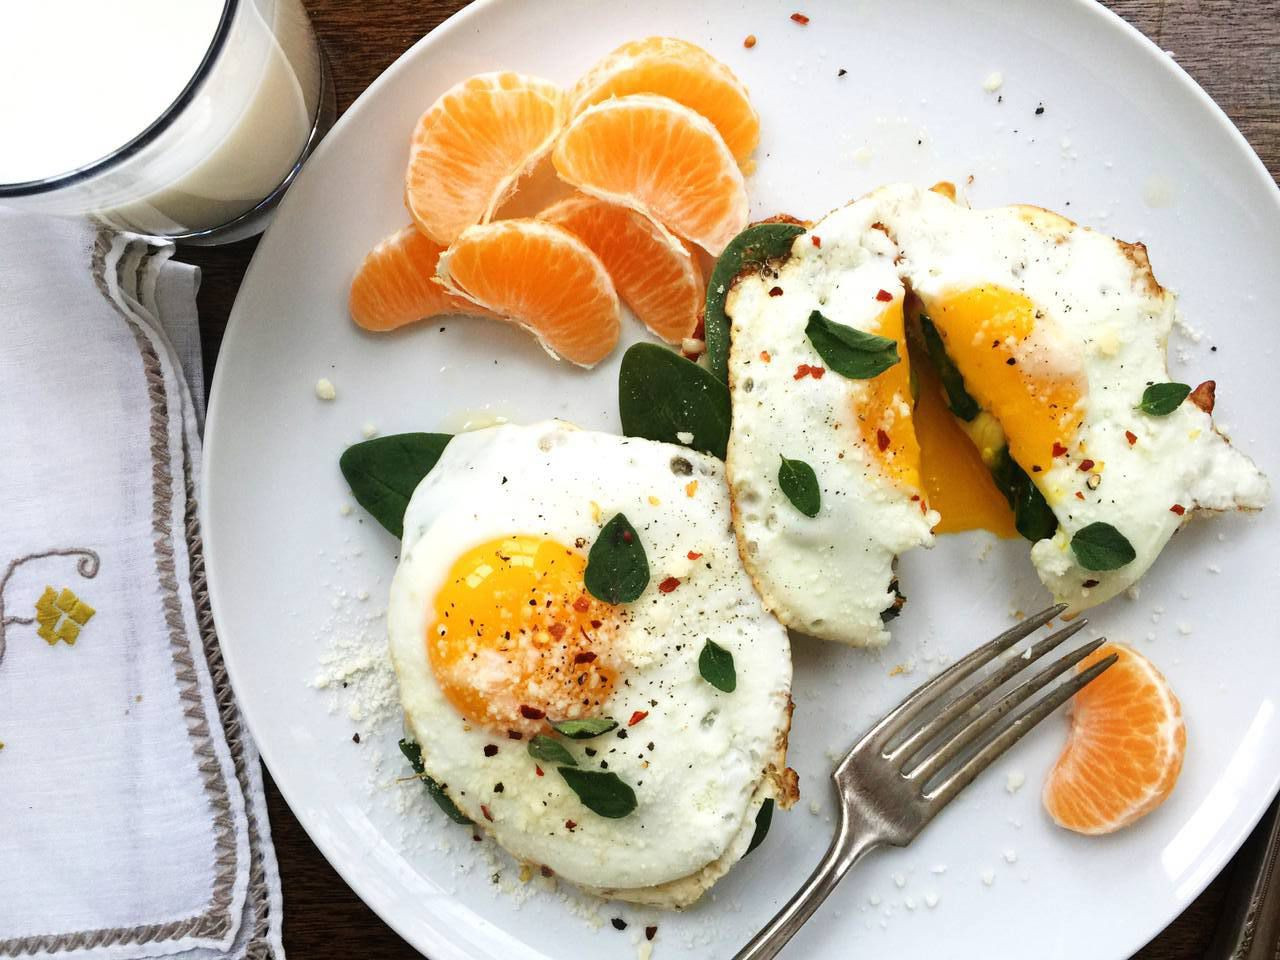 Healthy Breakfast Ideas
 34 Healthy Breakfast Ideas